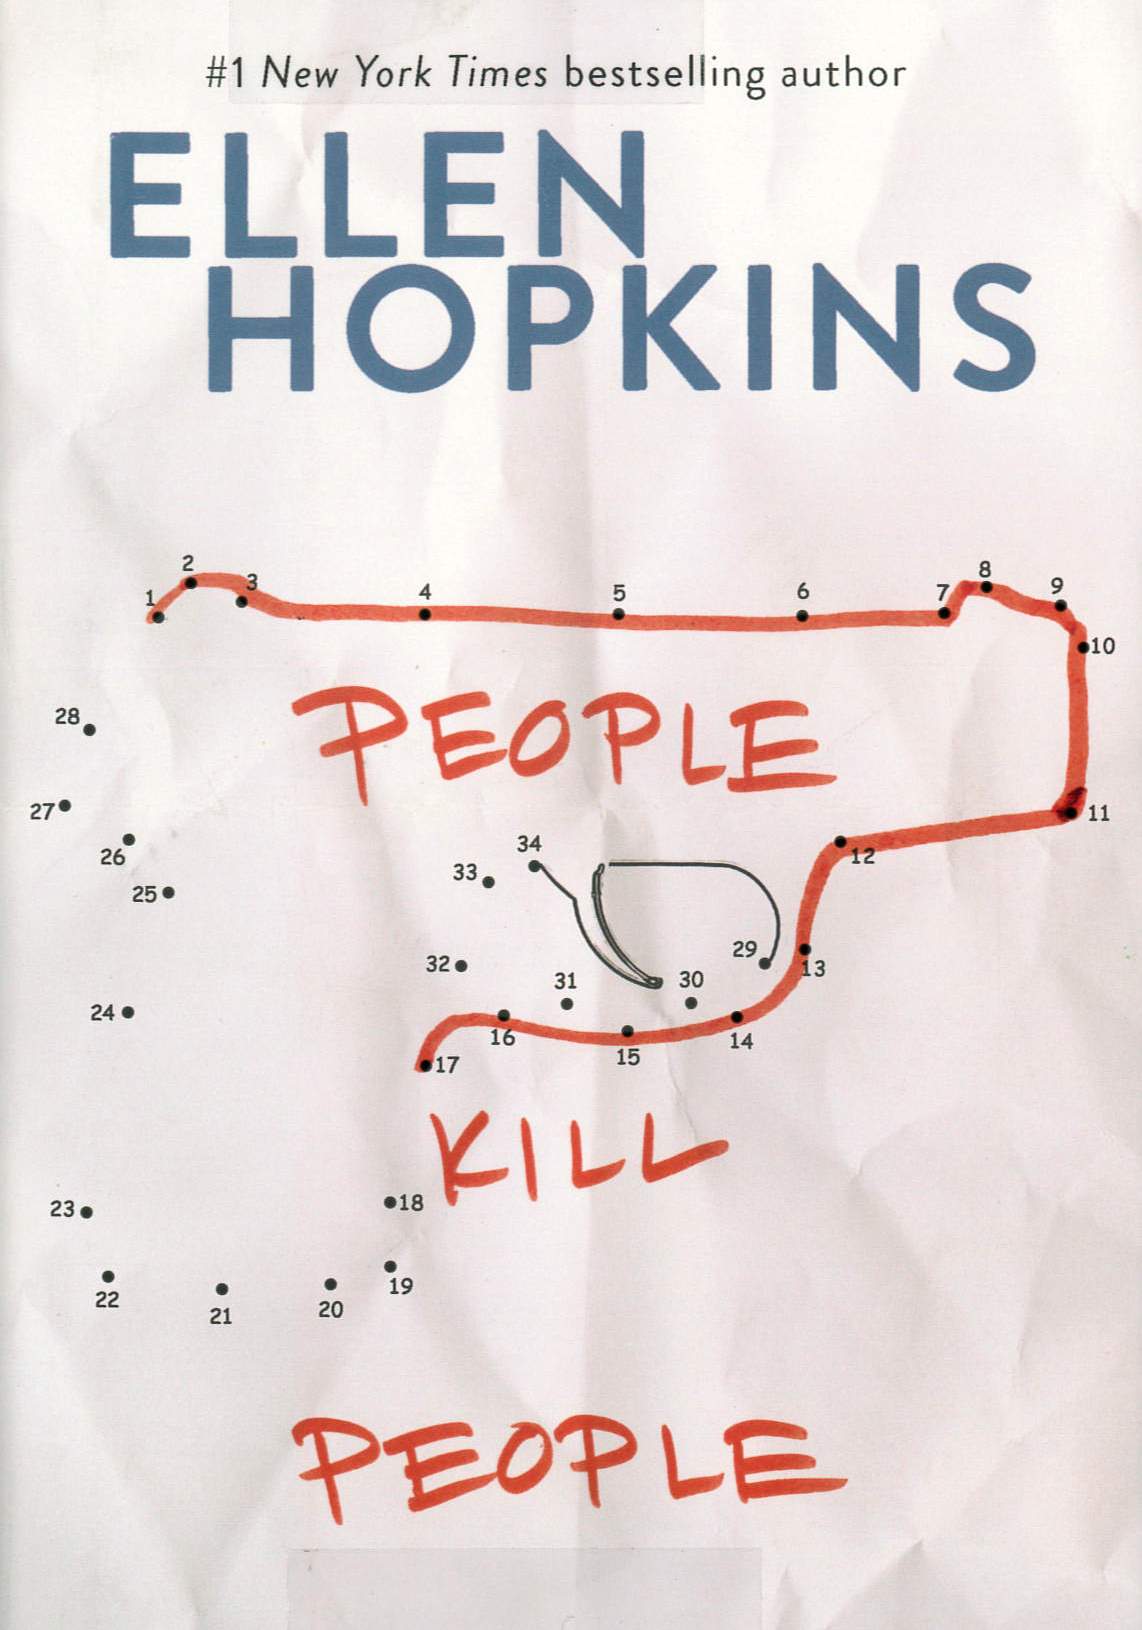 People kill people /